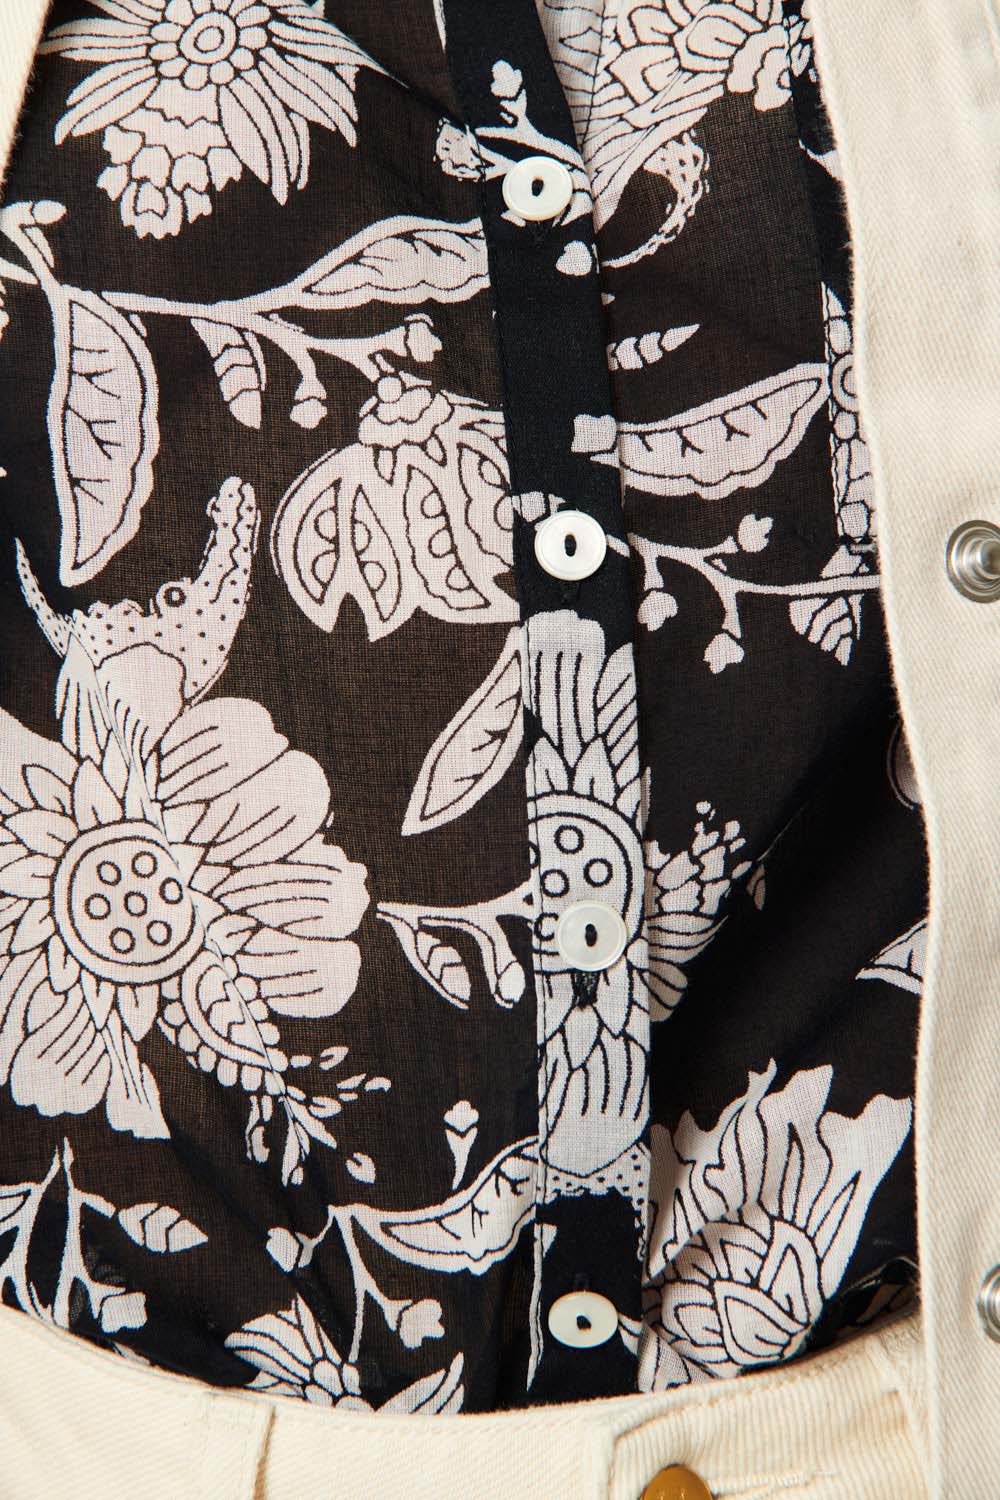 Chemise de coton légère à motif floral-croco